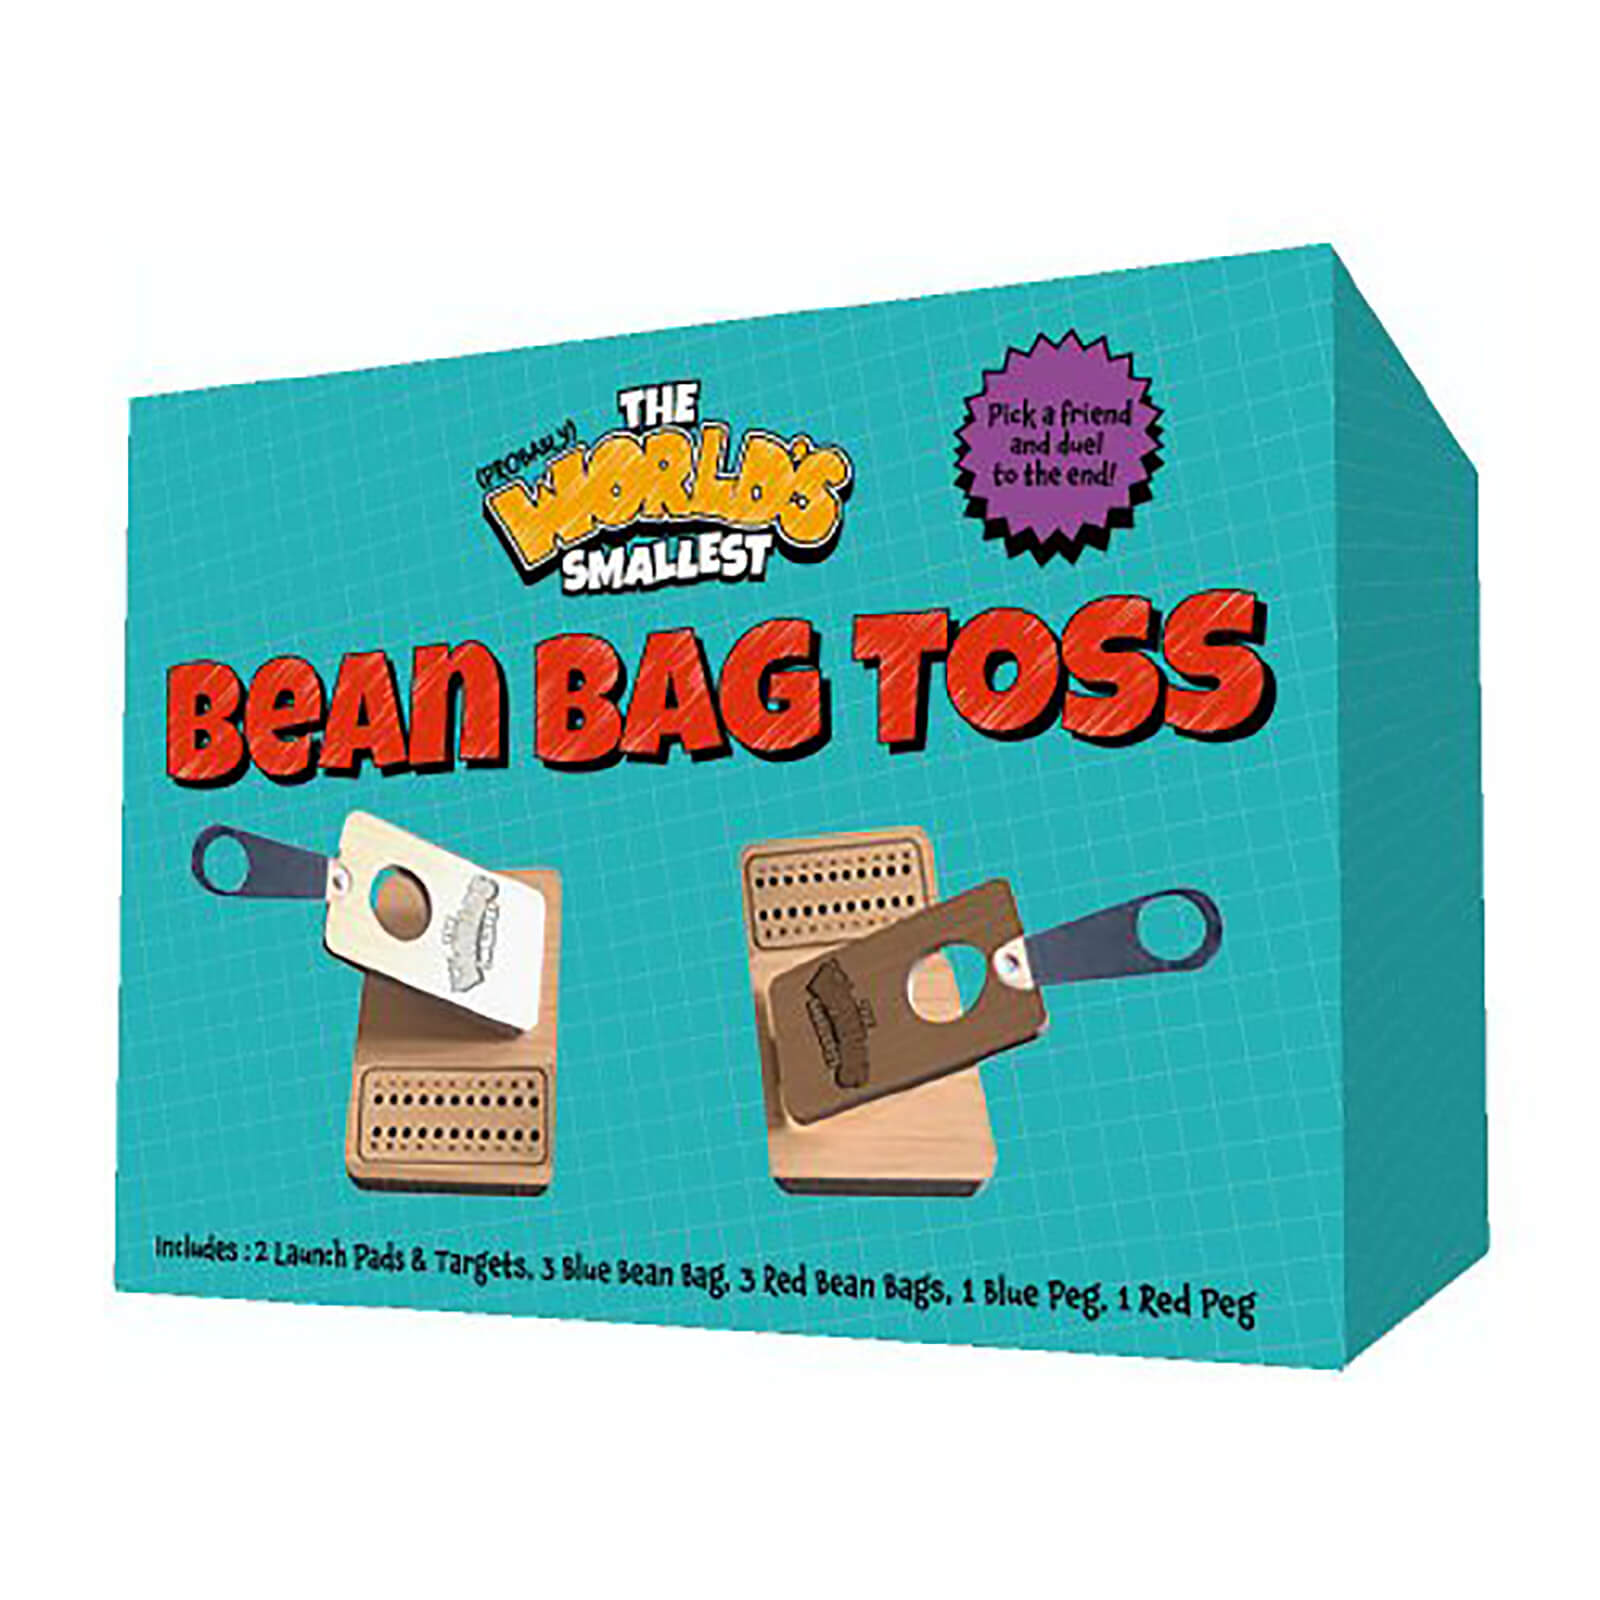 Image of World's Smallest Bean Bag Toss